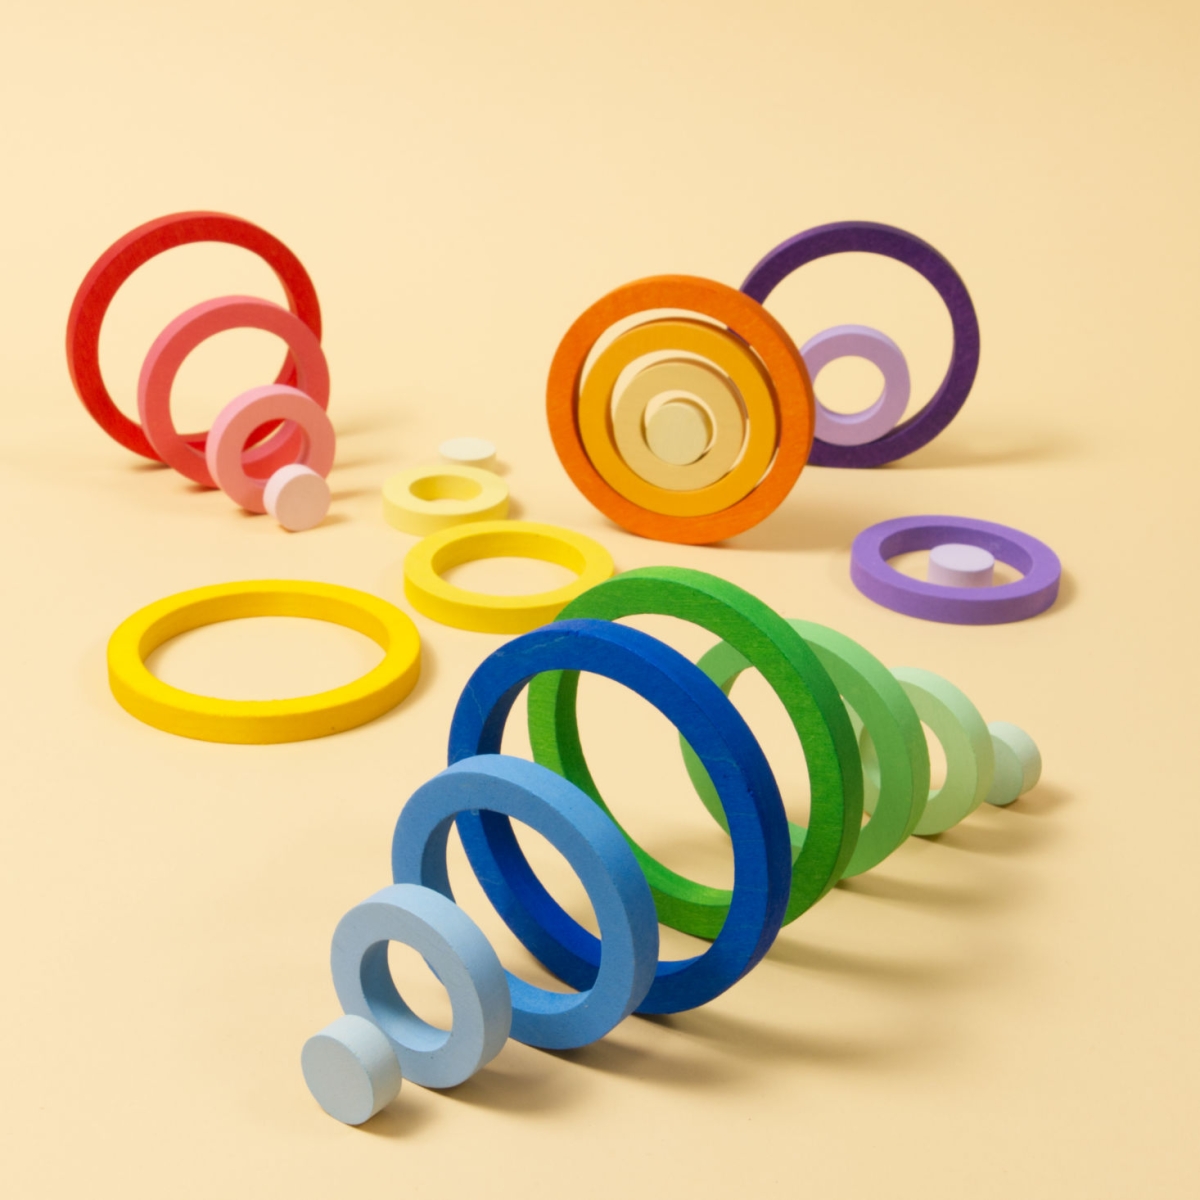 Sechs lila, blaue, gelbe, orangene, rote und grüne Ringe, in welchen je drei weitere angeordnet sind mit abgeschwächten Farbverlauf.